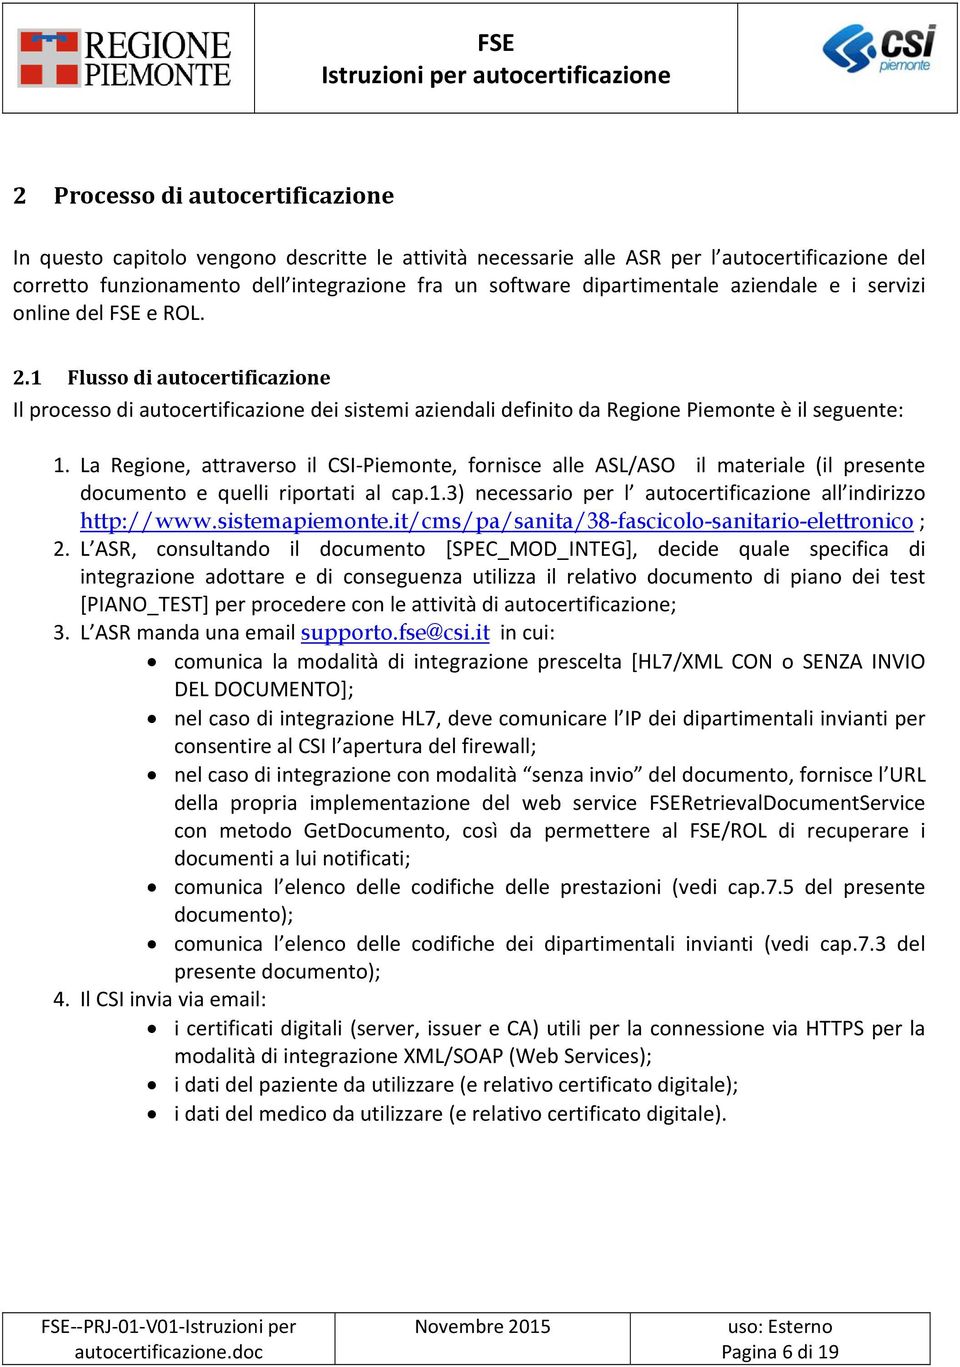 La Regione, attraverso il CSI Piemonte, fornisce alle ASL/ASO il materiale (il presente documento e quelli riportati al cap.1.3) necessario per l autocertificazione all indirizzo http://www.